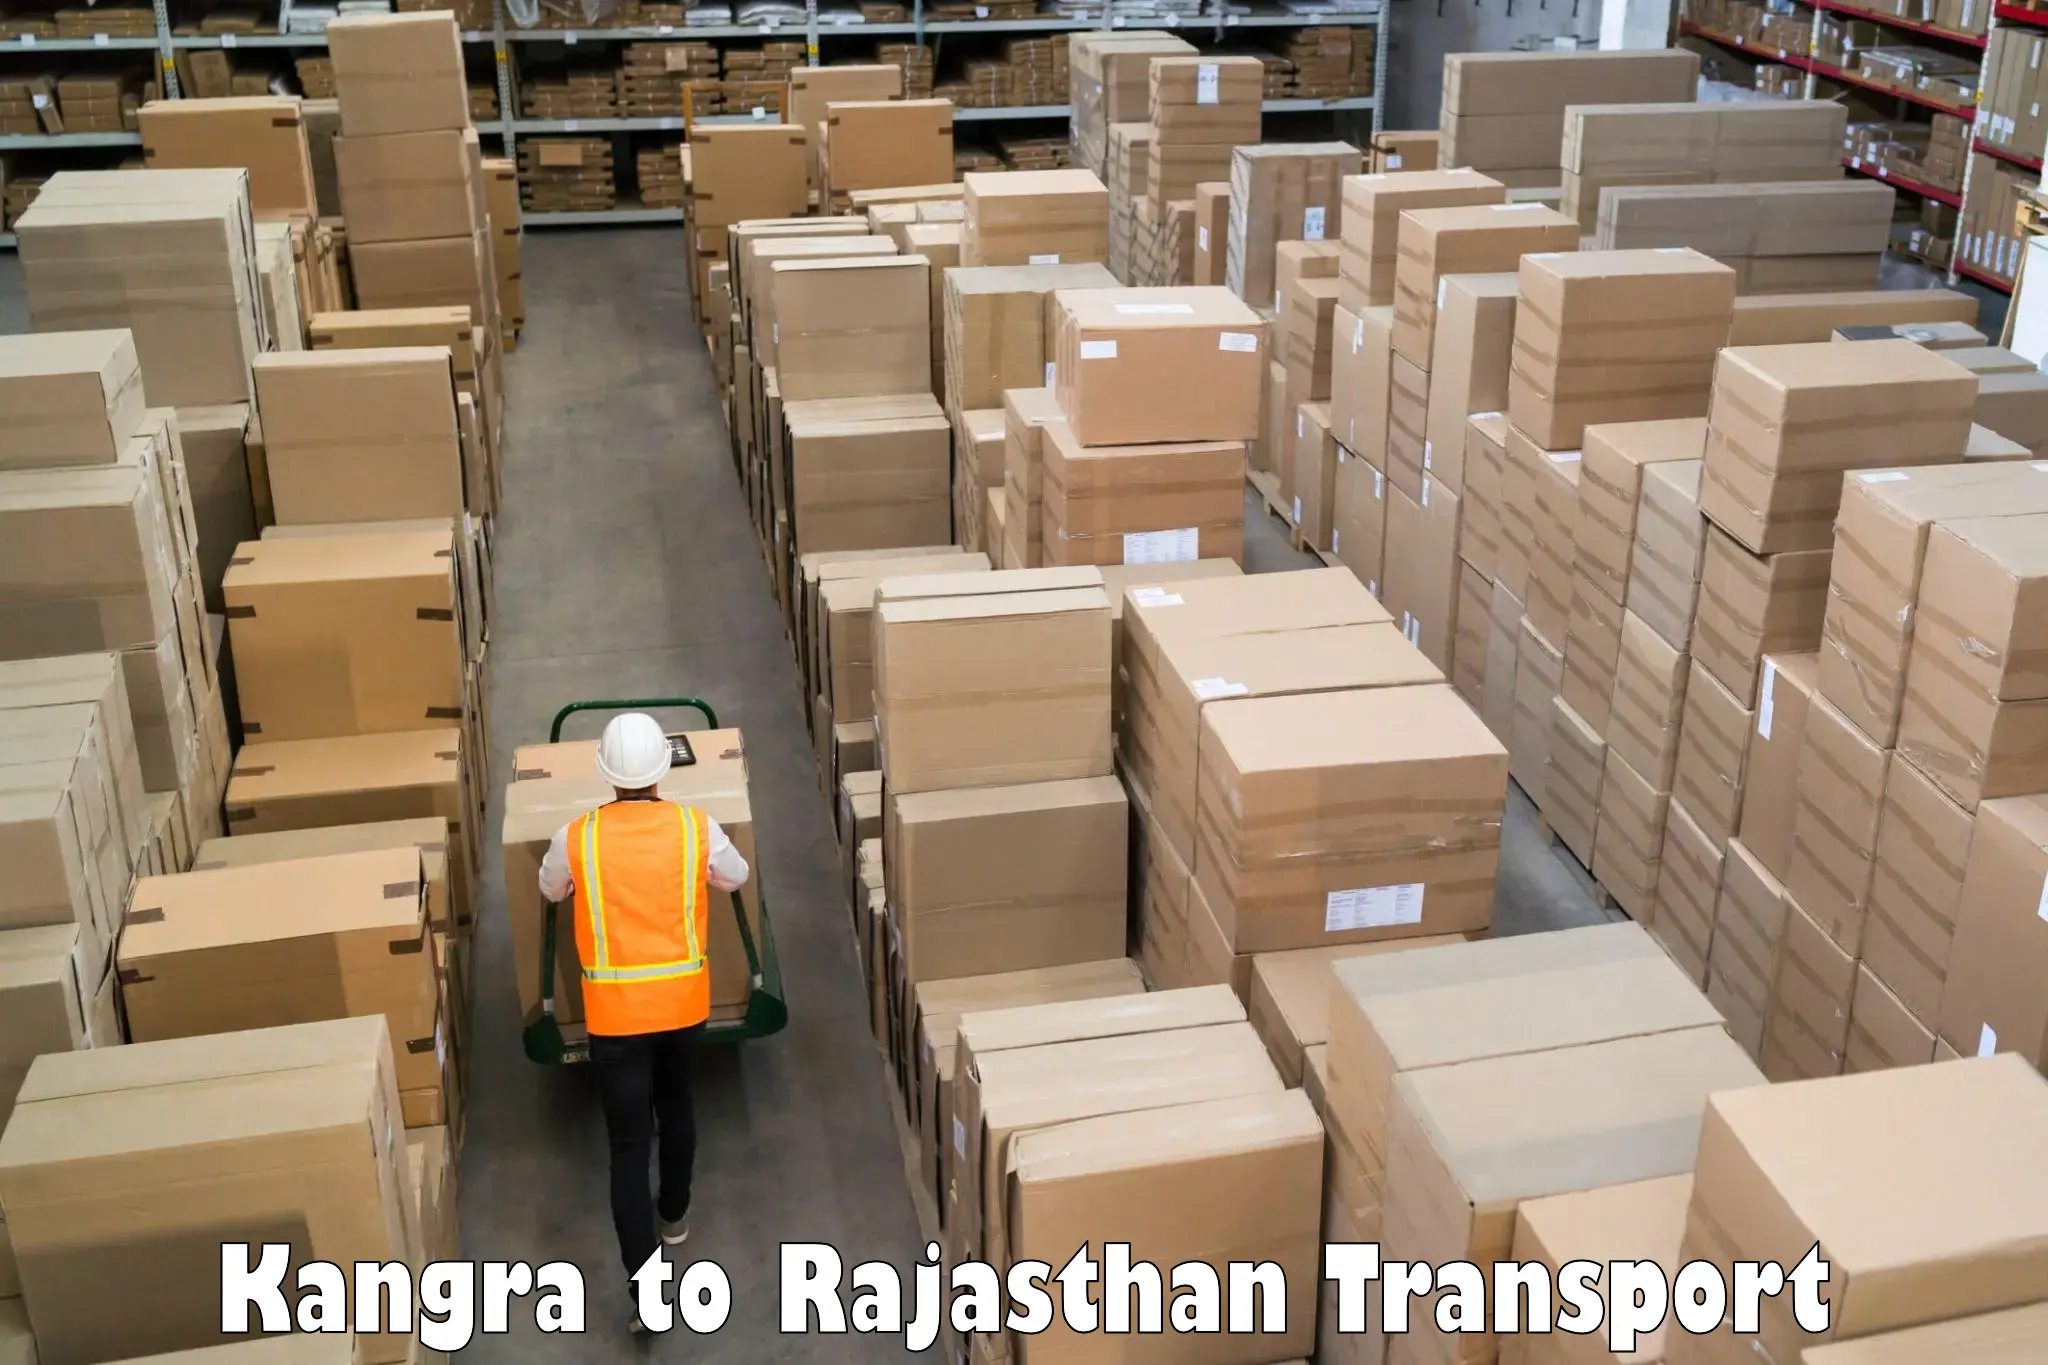 Online transport service Kangra to IIIT Kota